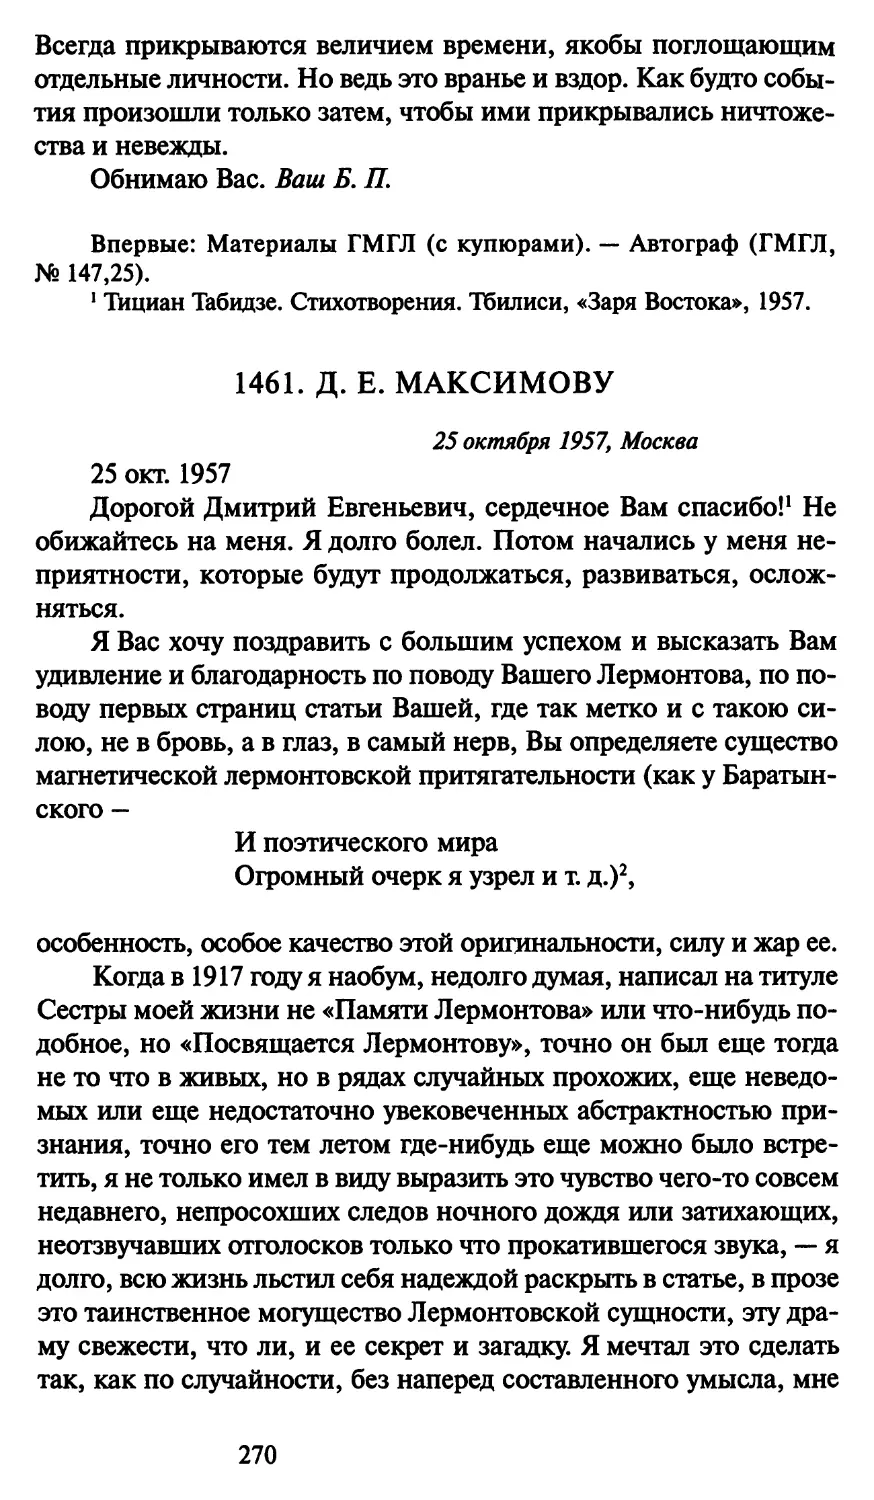 1461. Д. Е. Максимову 25 октября 1957